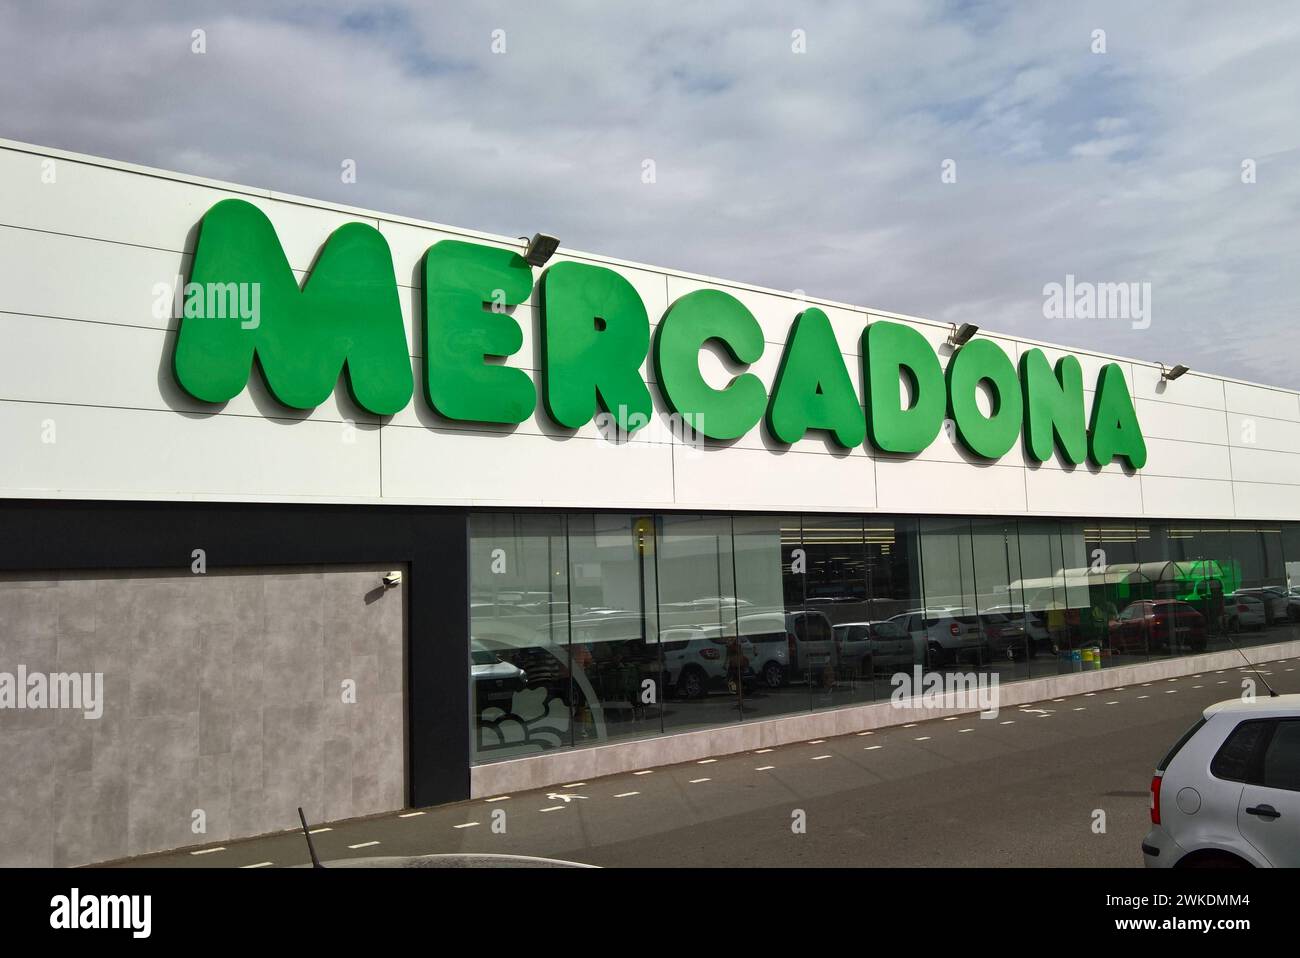 Mercadona S.A. ist die grösste Supermarktkette in Spanien, der Hauptsitz befindet sich in Valencia. In den Märkten und im Internet vertreibt das Unternehmen Lebensmittel und Güter des täglichen Bedarfs. Das Unternehmen befindet sich in Familienbesitz. In allen Provinzen des Landes vertreten gibt es insgesamt 1636 Filialen - Stand Oktober 2020 - mit durchschnittlich 1300 Quadratmetern Verkaufsfläche. Der Marktanteil von Mercadona in Spanien liegt bei über 22 Prozent. Foto: Marcadona Supermercado - Supermarkt auf Fuerteventura, Kanarische Inseln *** Mercadona S A is the largest supermarket chain Stock Photo